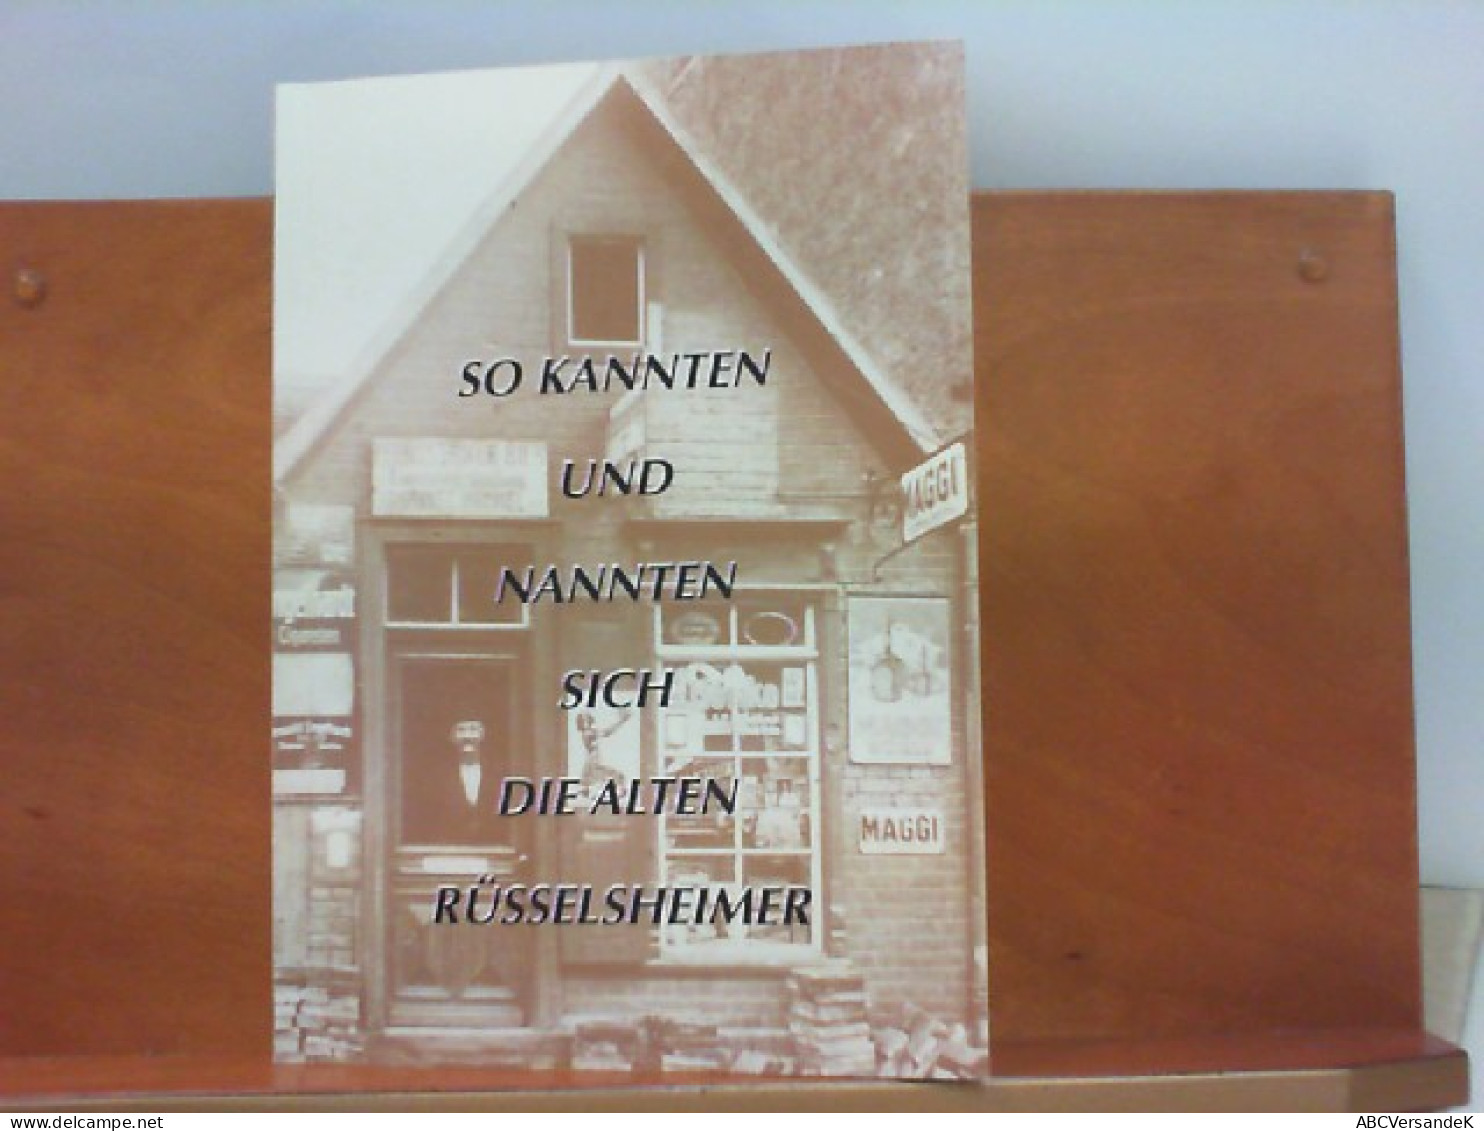 So Kannten Und Nannten Sich  Die Alten Rüsselsheimer - Libros Autografiados